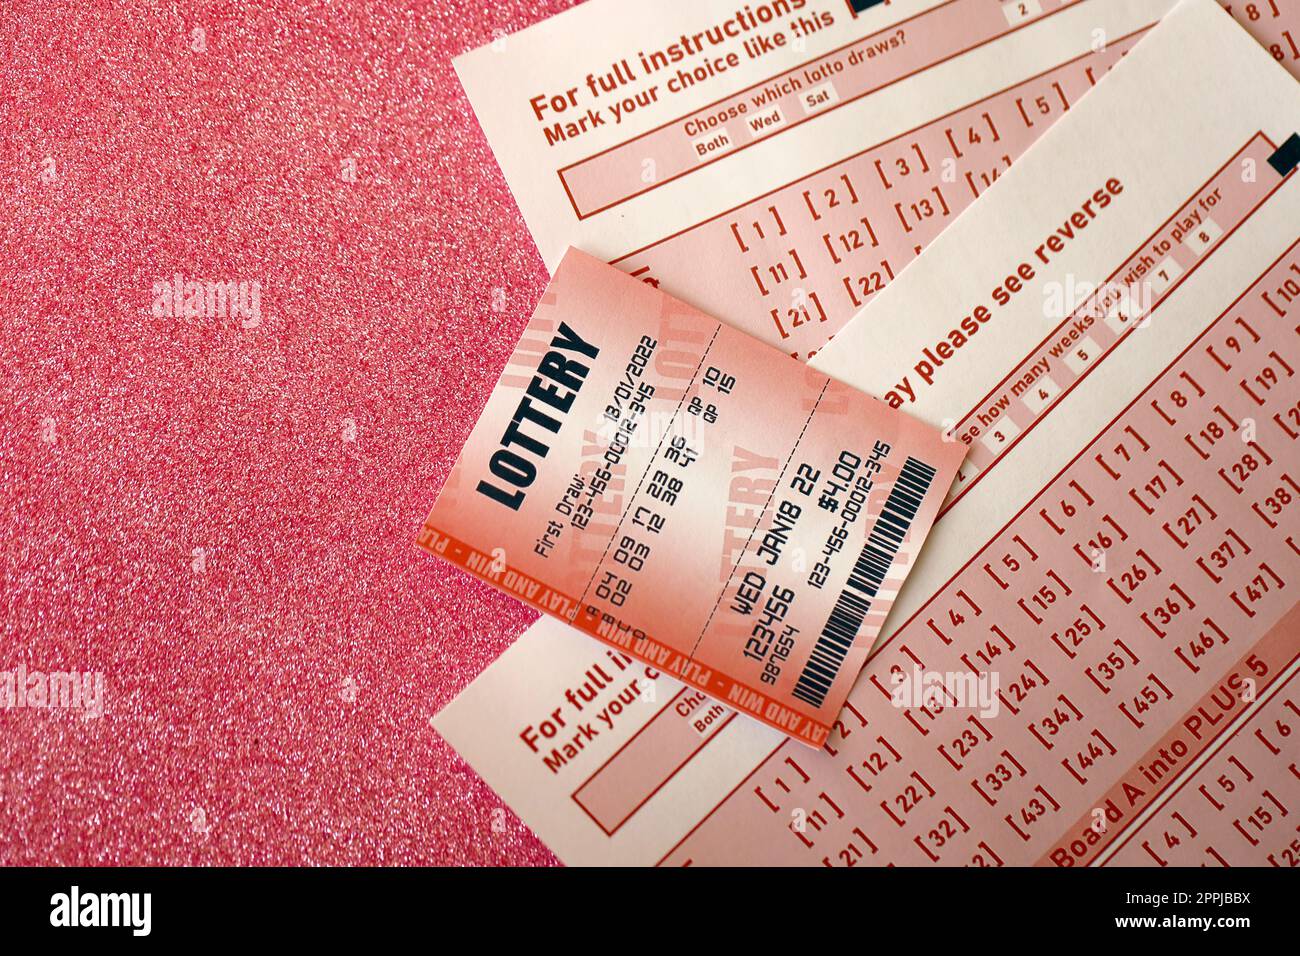 Billet de loterie rouge se trouve sur des feuilles de jeu roses avec des numéros pour marquer pour jouer à la loterie. Concept de jeu de loterie ou dépendance au jeu. Gros plan Banque D'Images